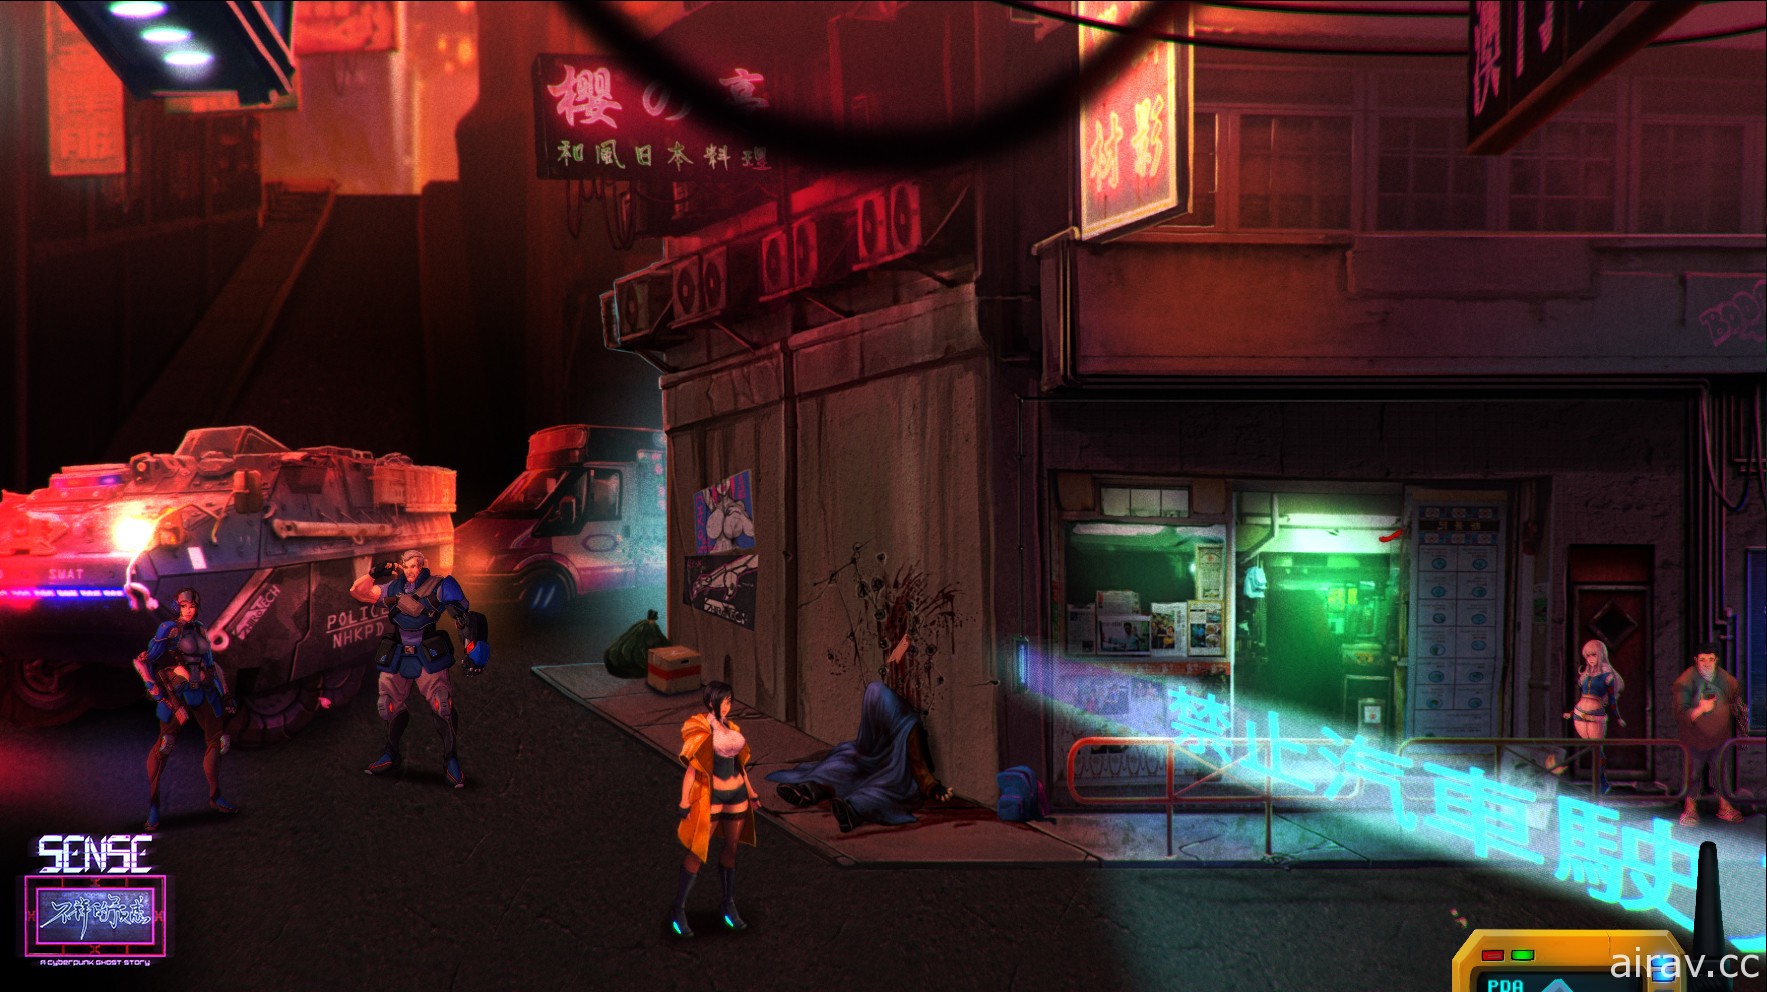 廣東民間傳說 x 賽博龐克恐怖遊戲《Sense 不祥的預感》宣布將於 8 月 25 日推出